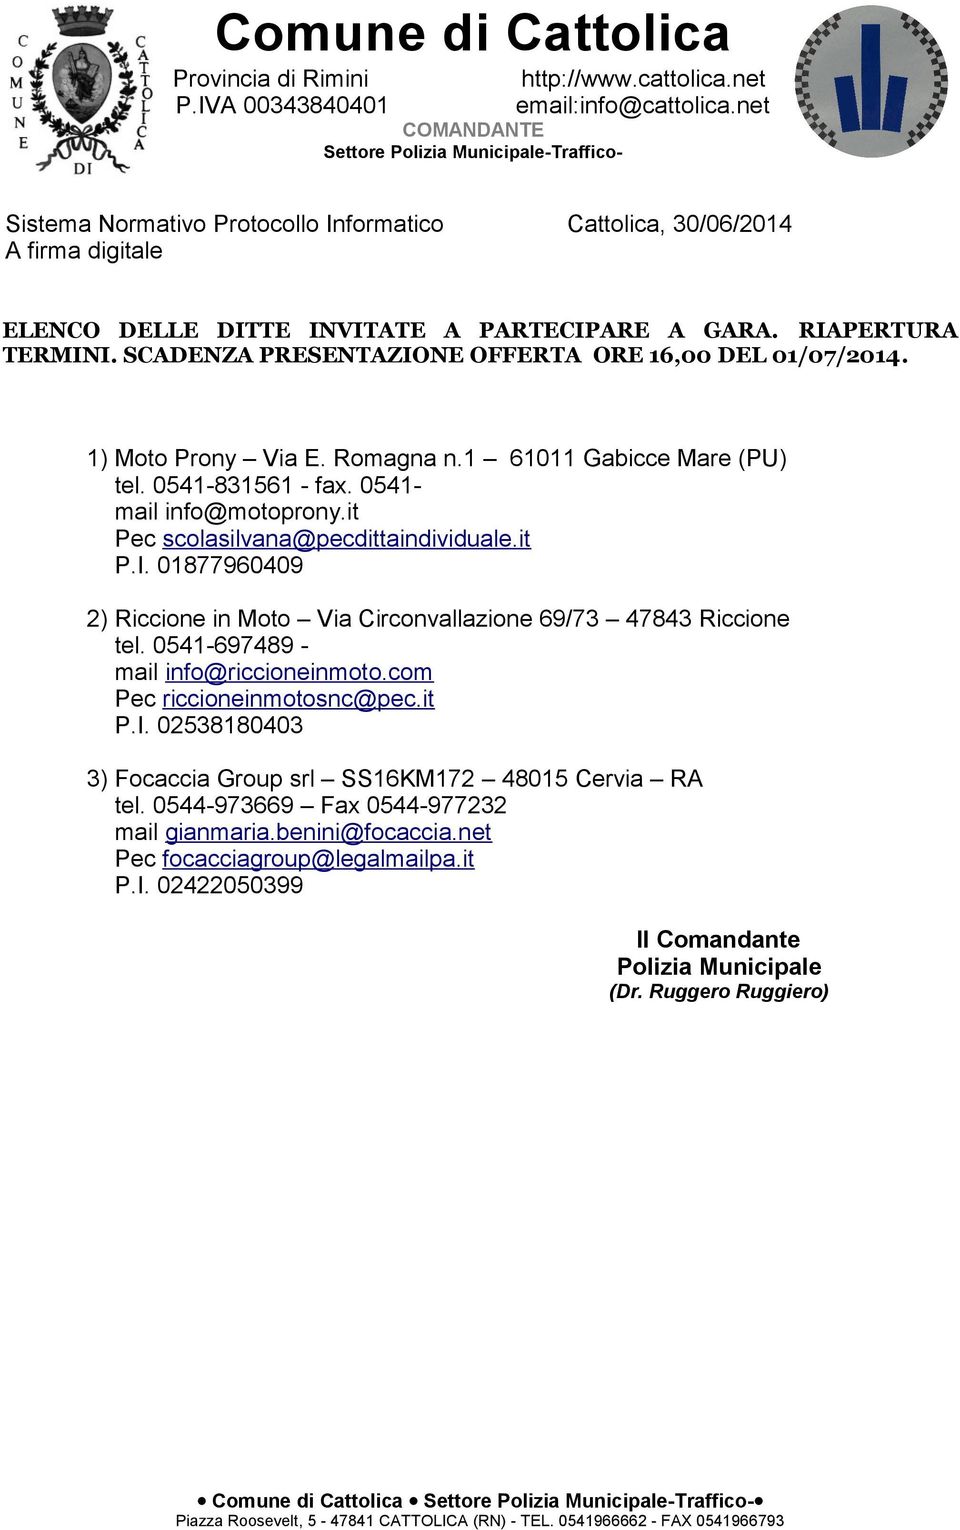 RIAPERTURA TERMINI. SCADENZA PRESENTAZIONE OFFERTA ORE 16,00 DEL 01/07/2014. 1) Moto Prony Via E. Romagna n.1 61011 Gabicce Mare (PU) tel. 0541-831561 - fax. 0541- mail info@motoprony.